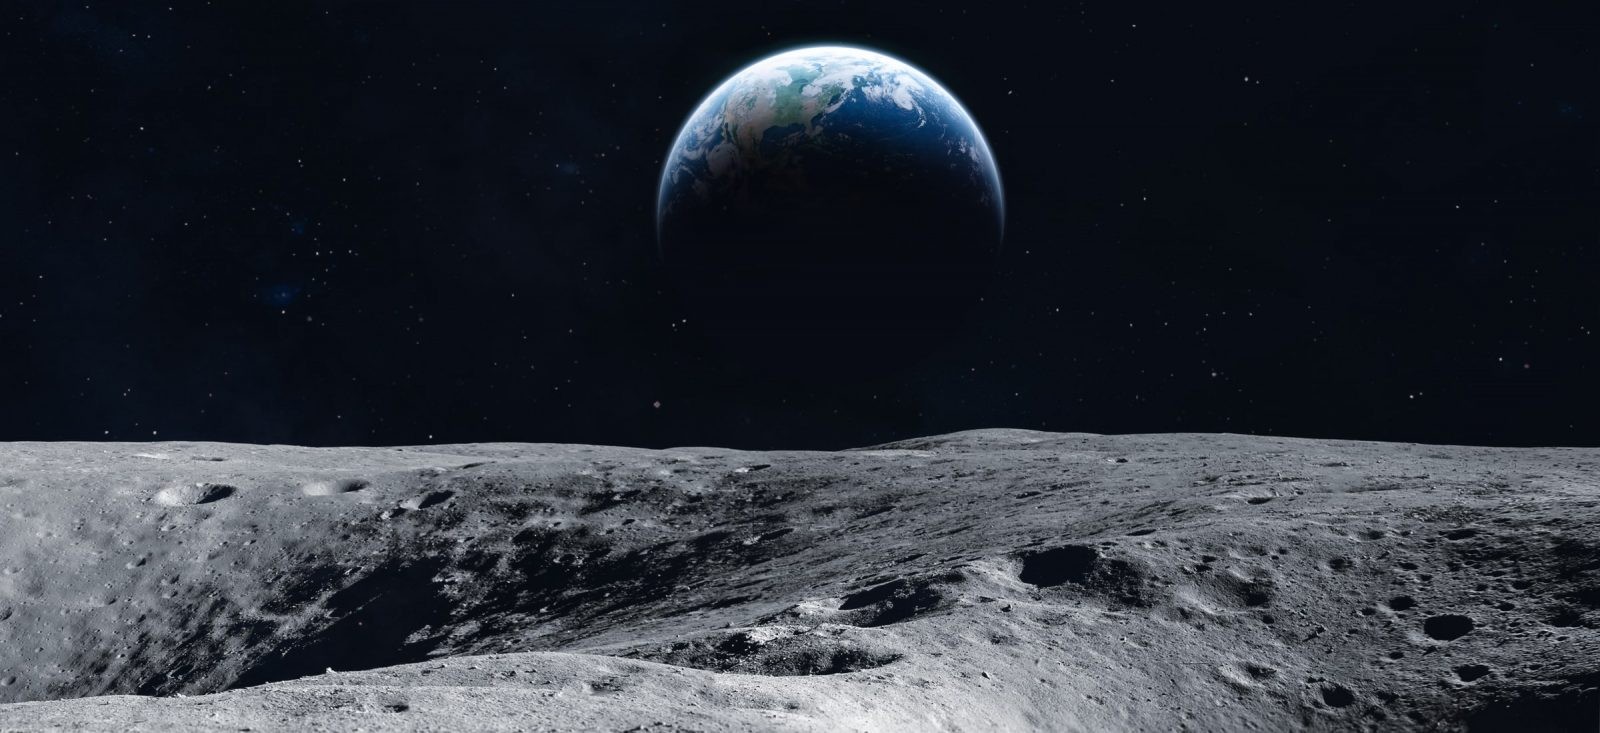 Polska przygotowuje księżycowego skoczka. To on będzie skakał po Księżycu z miejsca na miejsce